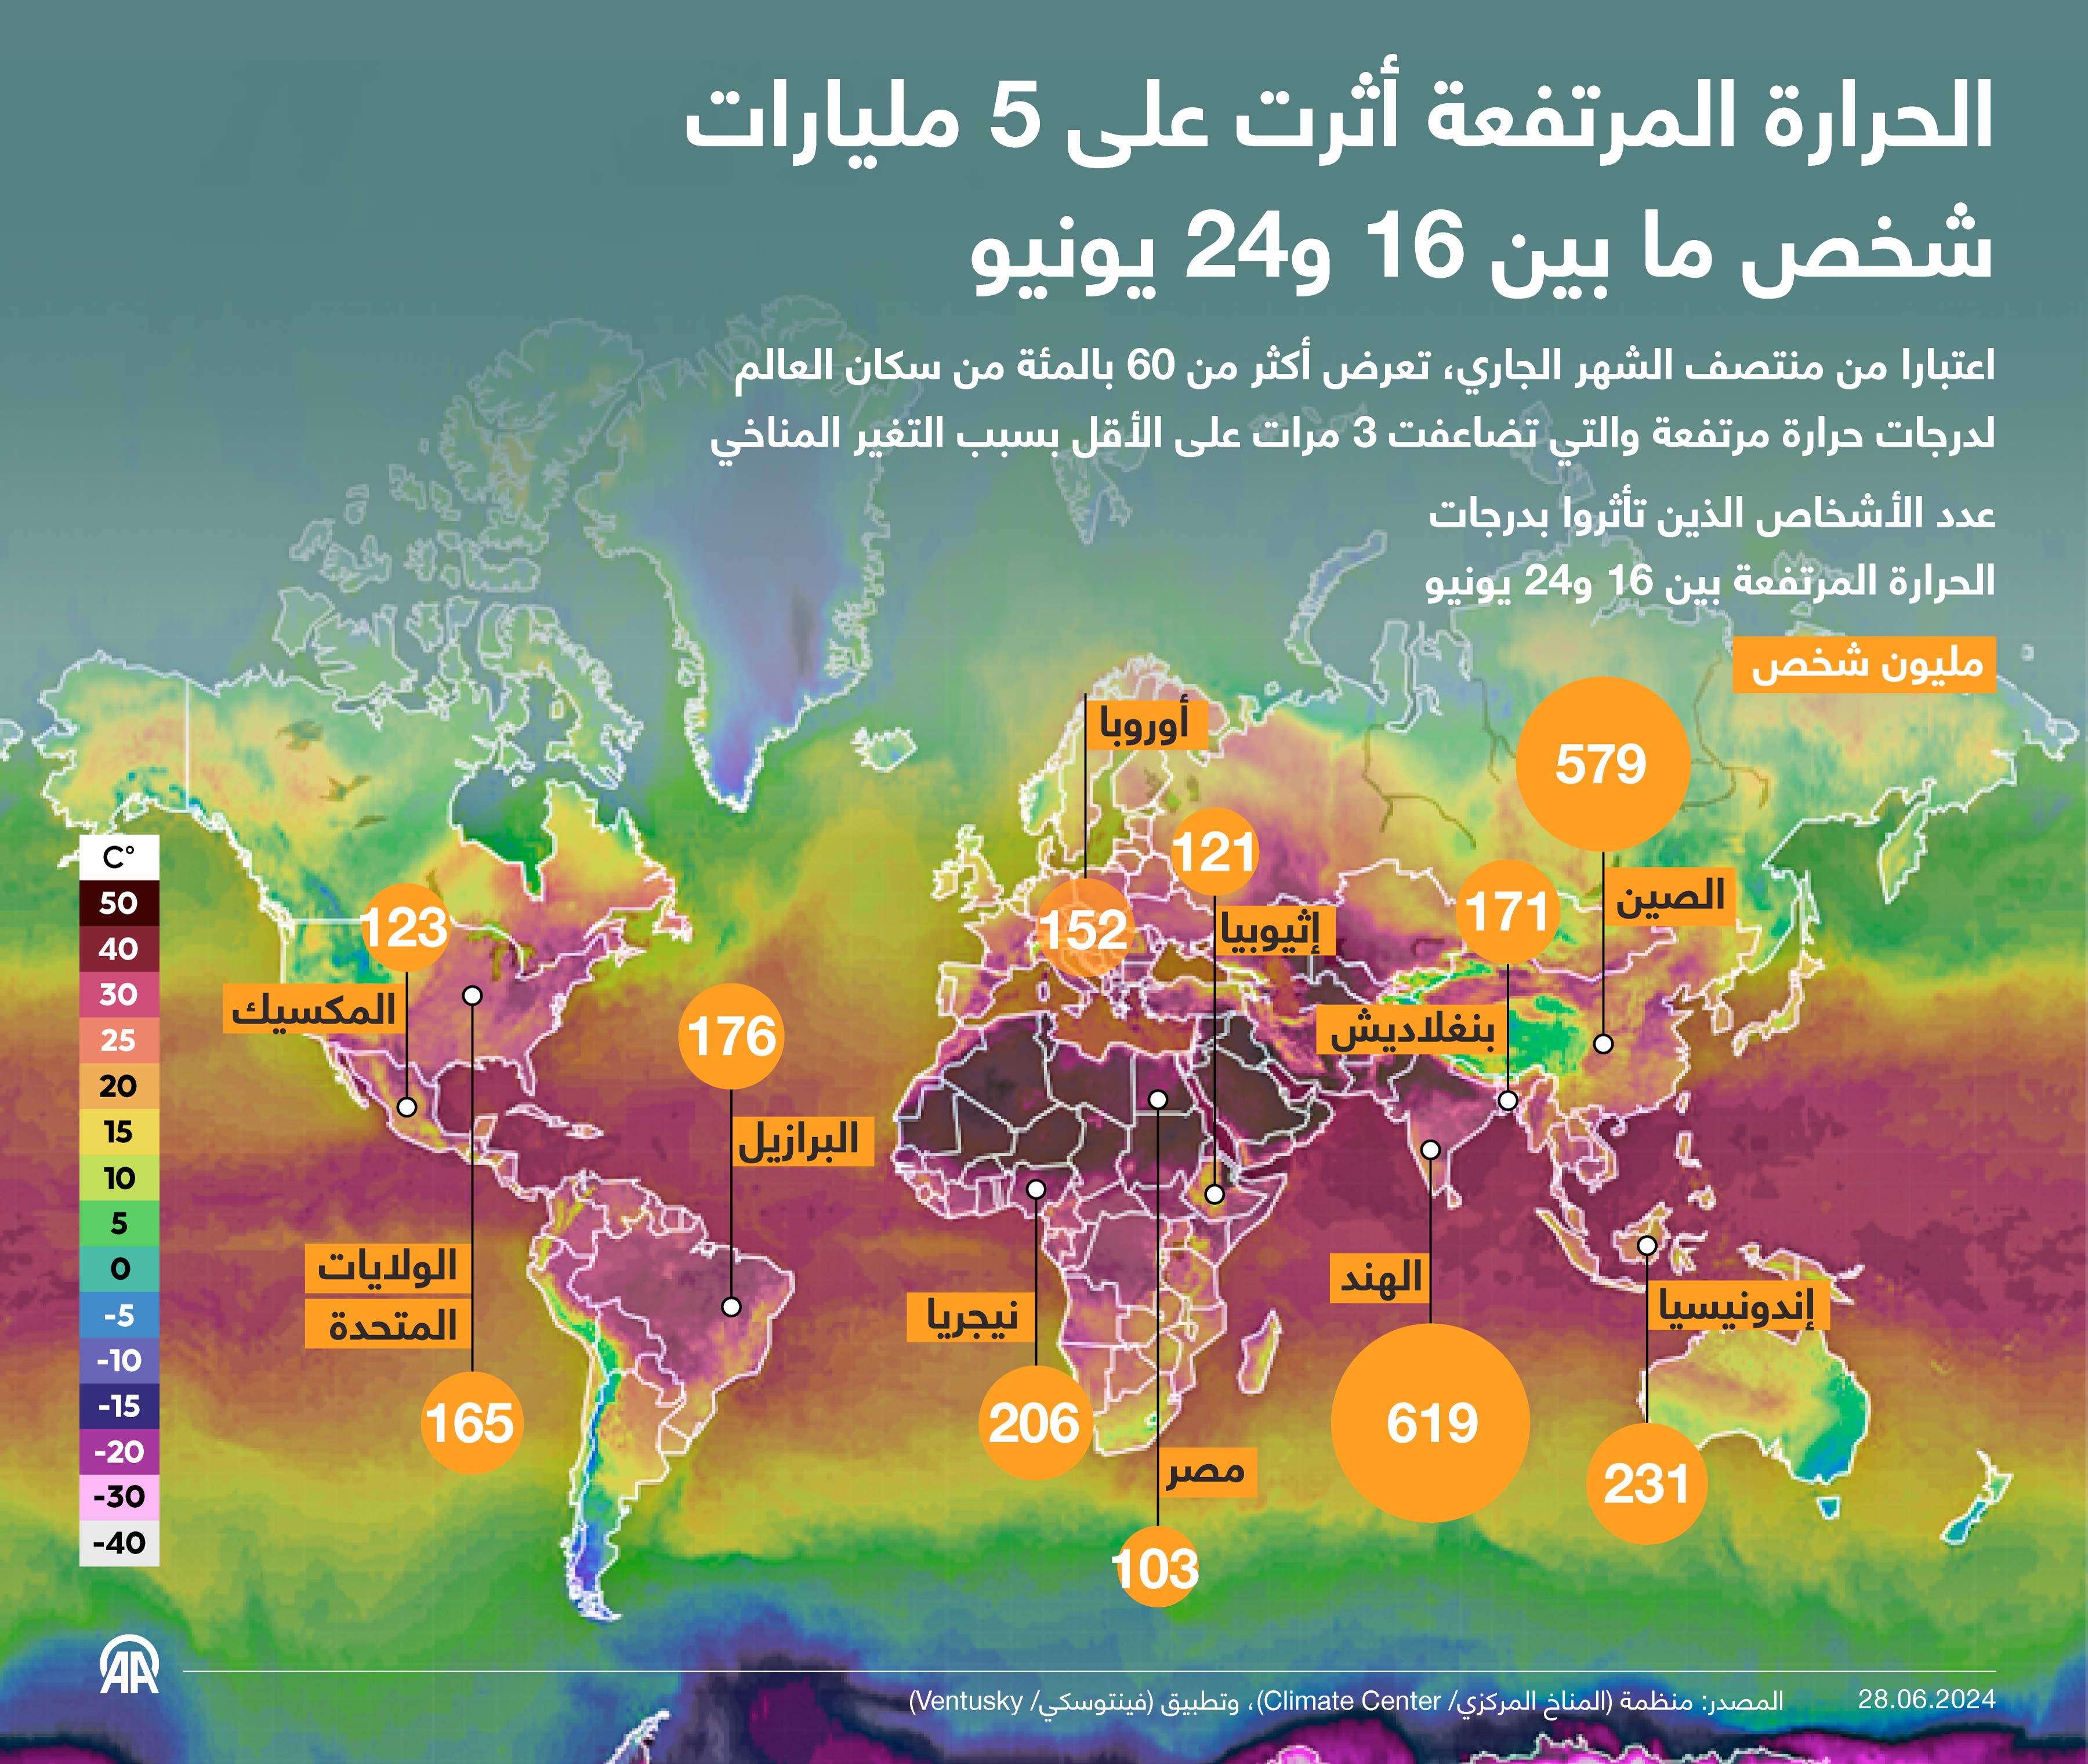 الحرارة المرتفعة أثرت على 5 مليارات شخص ما بين 16 و24 يونيو